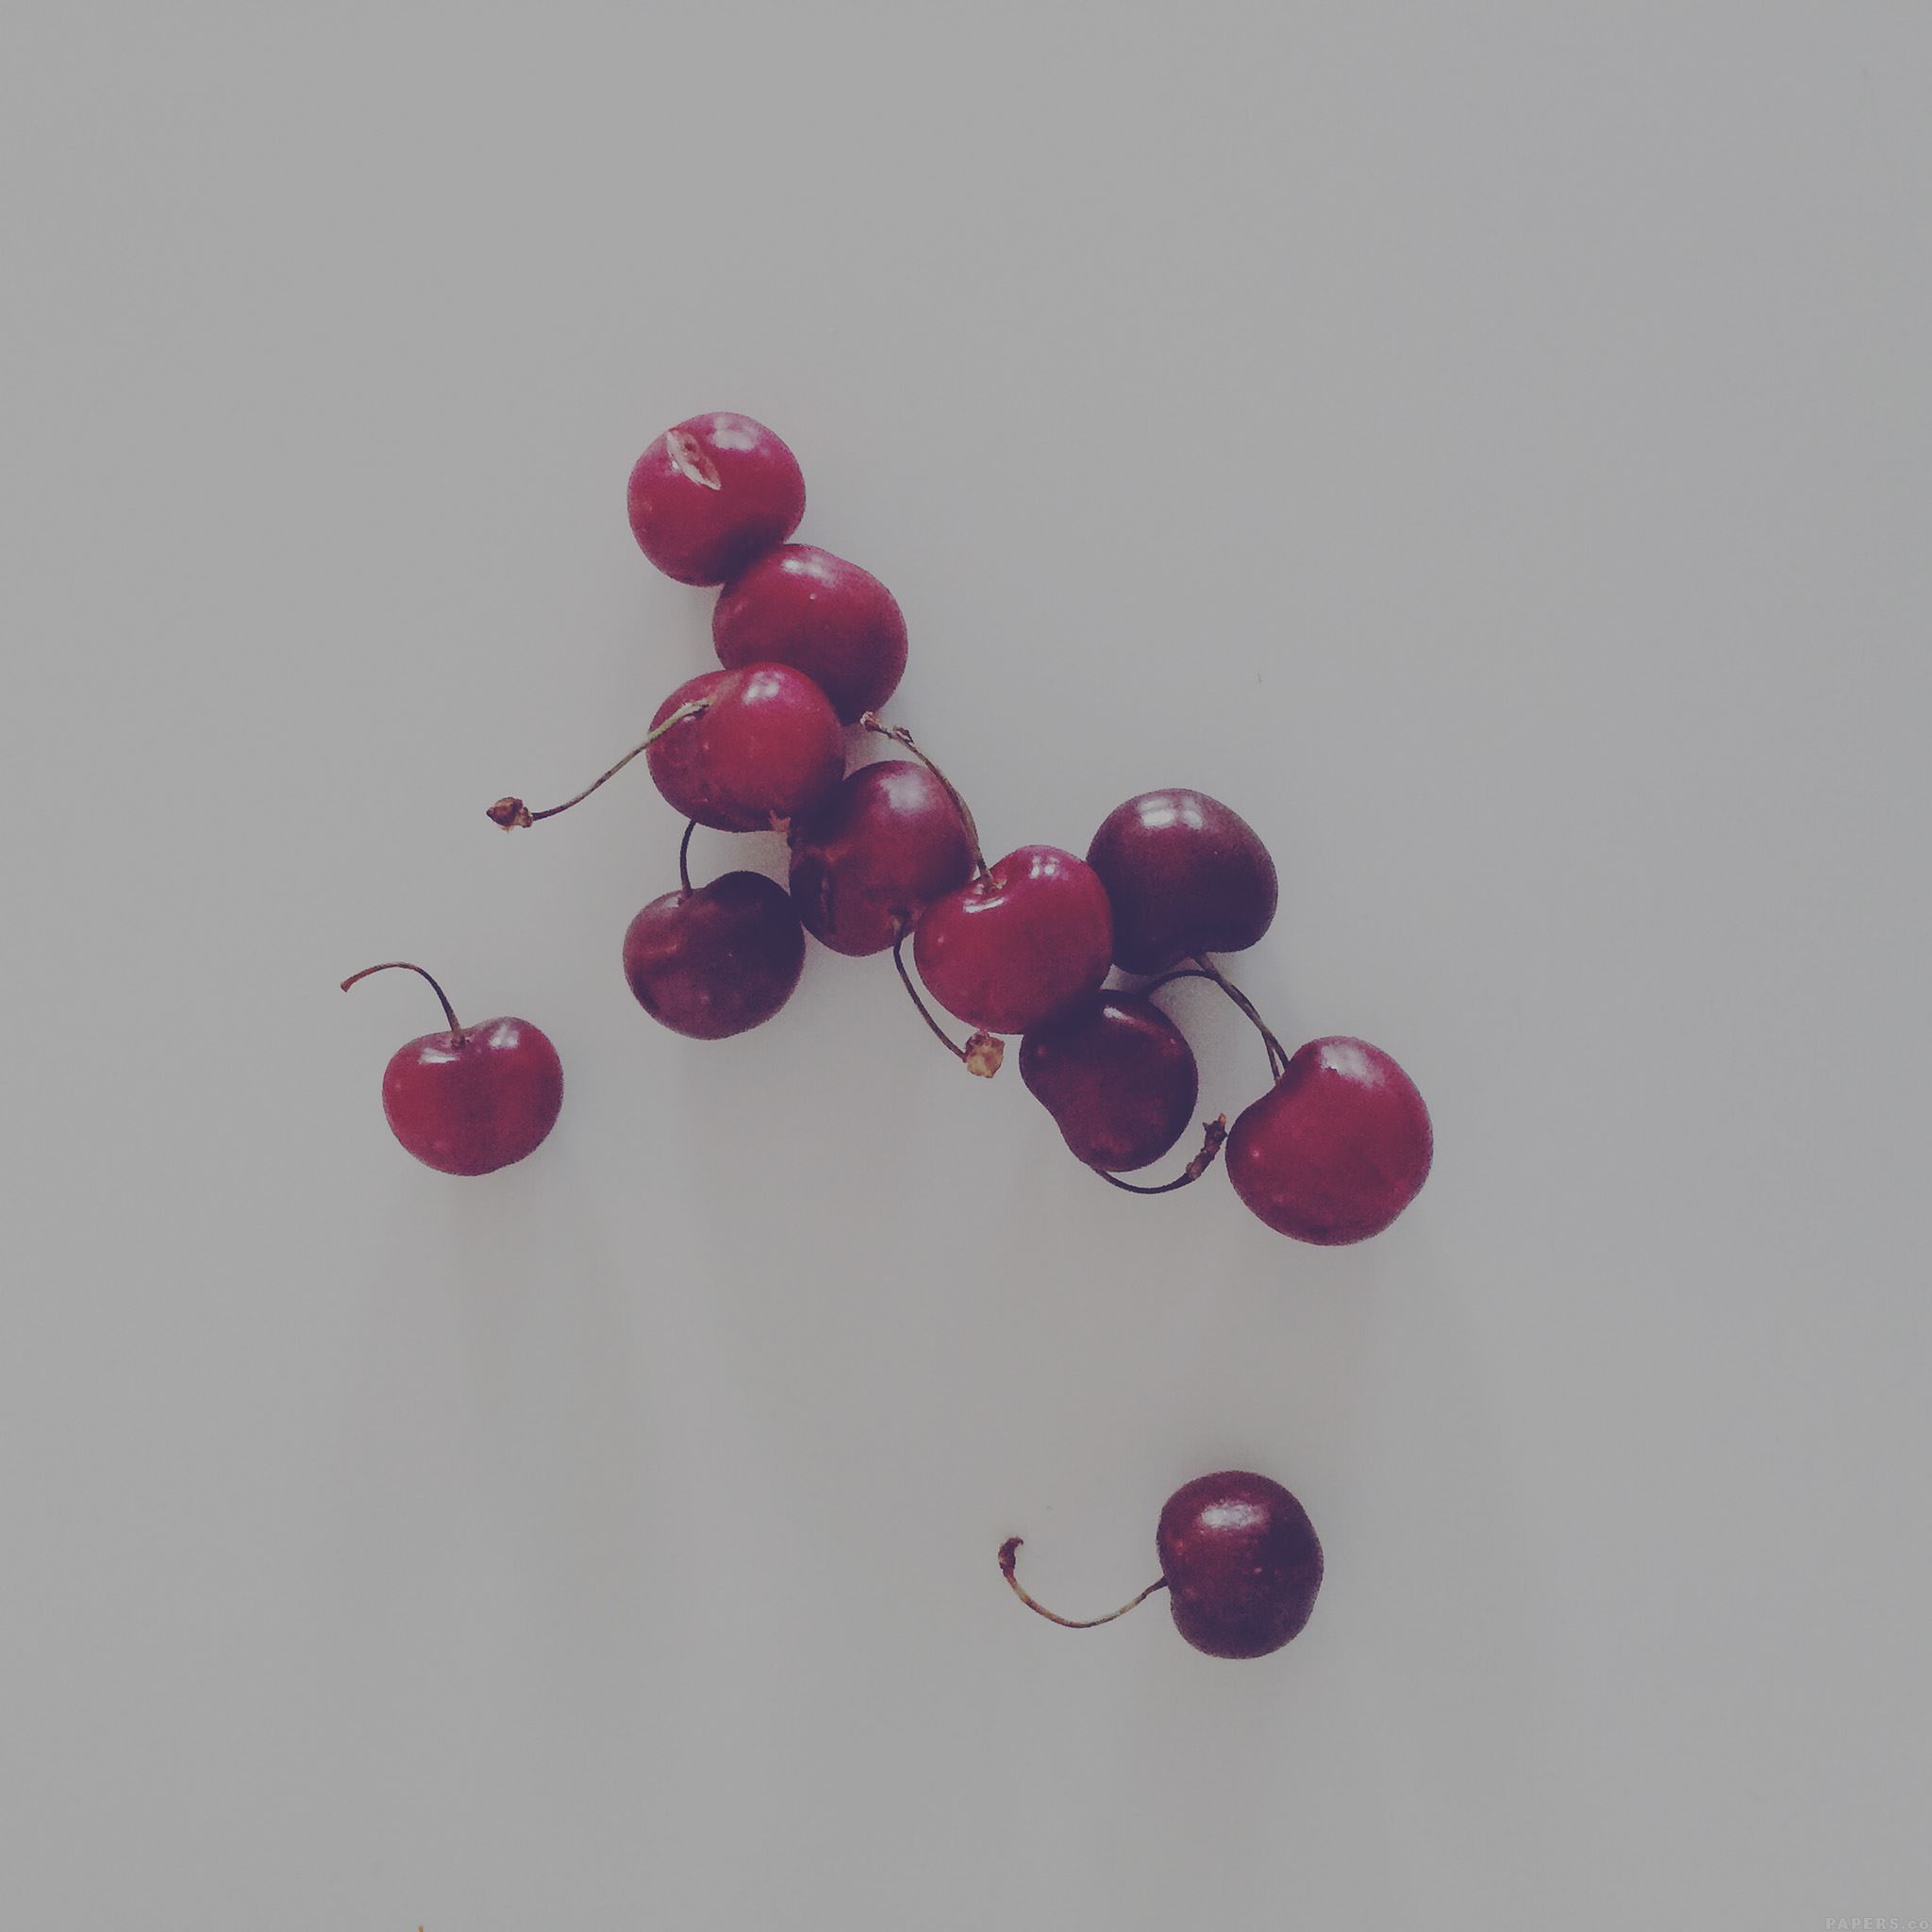 Cherry Red Dark Paula Borowska Fruit Nature iPad Air wallpaper 